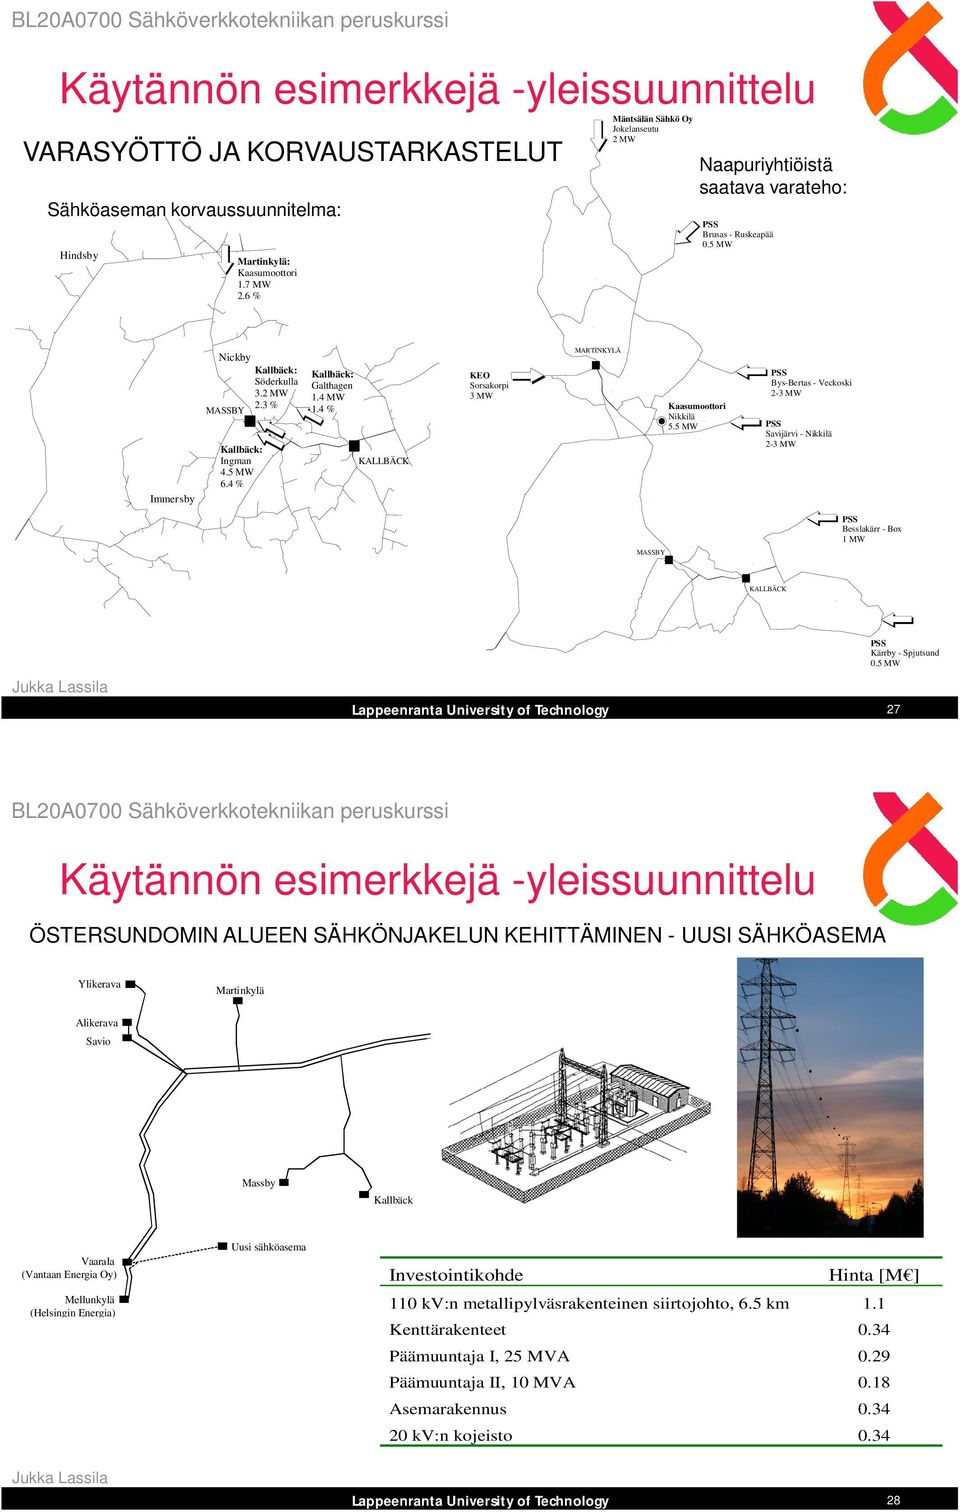 4 MW 1.4 % KALLBÄCK KEO Sorsakorpi 3 MW MARTINKYLÄ Kaasumoottori Nikkilä 5.